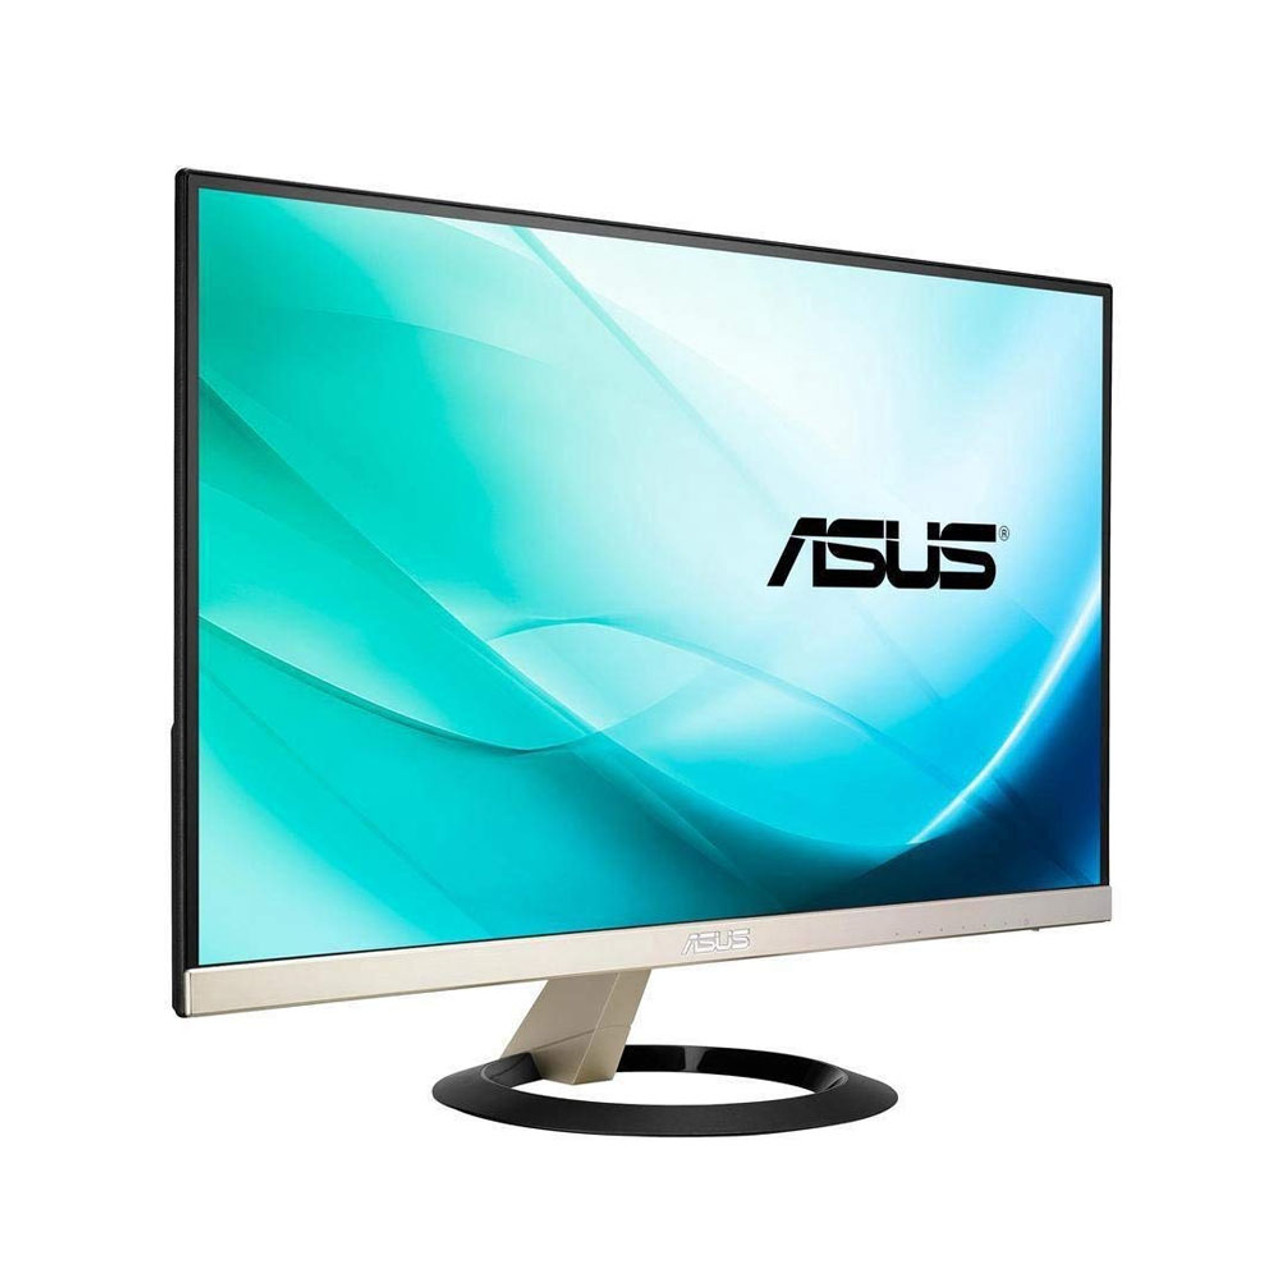 Asus VZ239H Frameless 23" 5ms (GTG) IPS Widescreen LCD/LED 1920x1080 Ultra-Slim Monitor